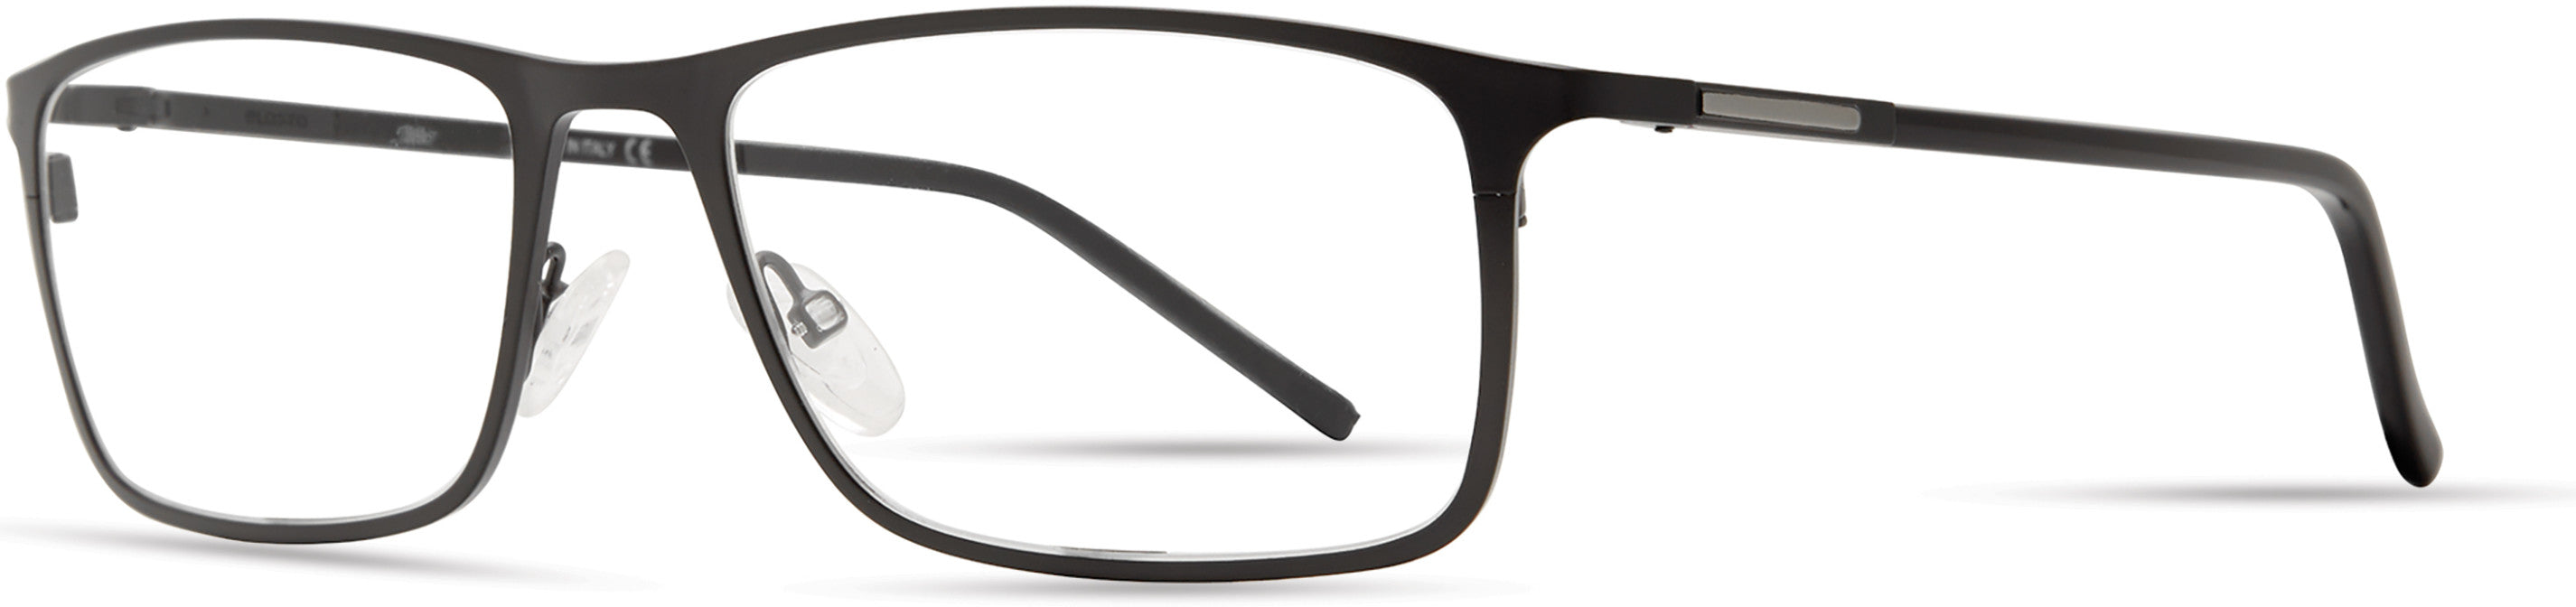  Elasta 7231 Rectangular Eyeglasses 0003-0003  Matte Black (00 Demo Lens)